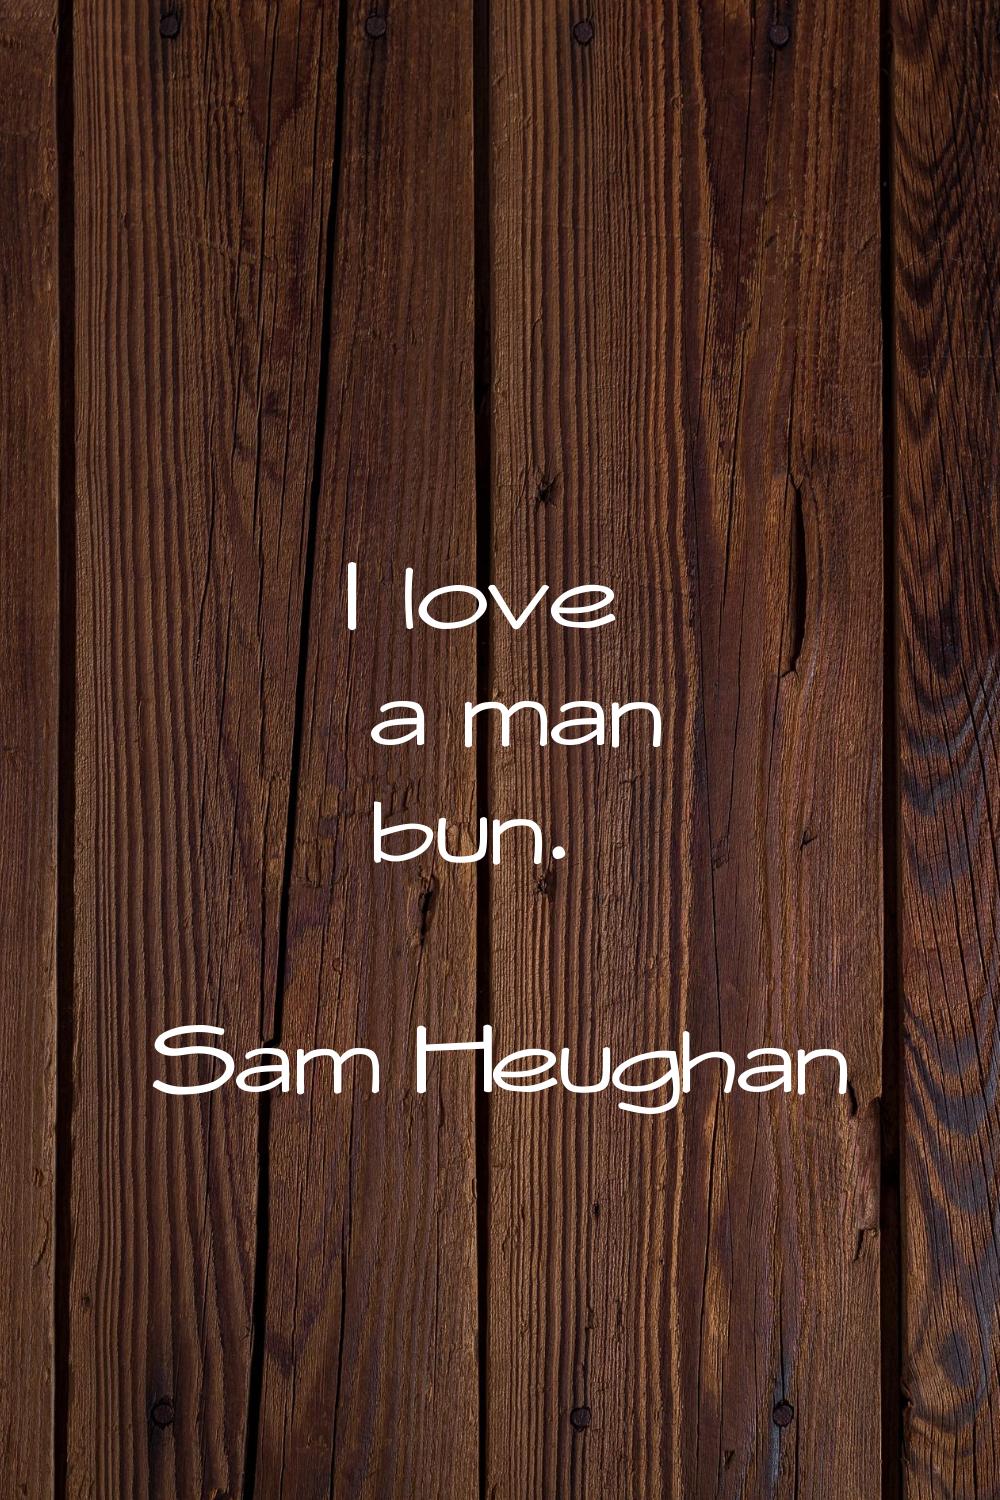 I love a man bun.